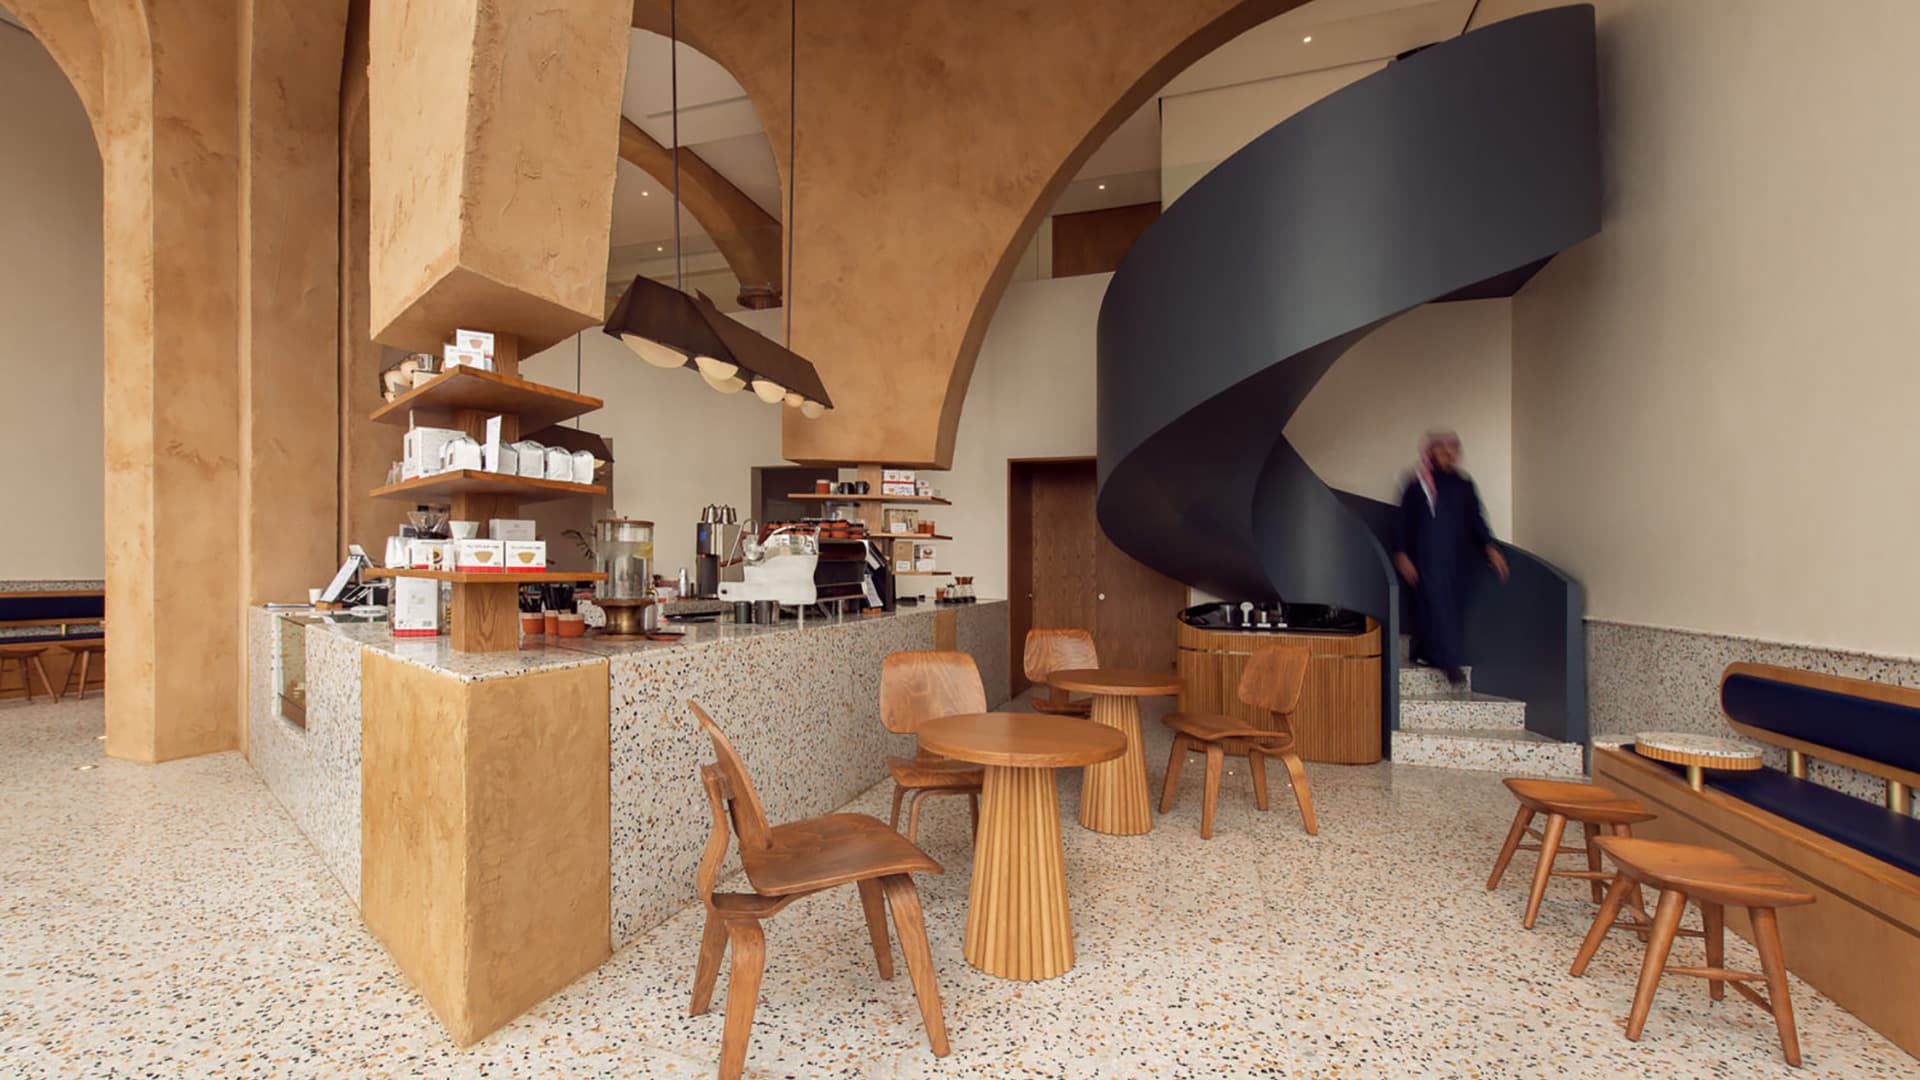 Современный магазин кофе с ритуальной атмосферой – проект AZAZ Architects